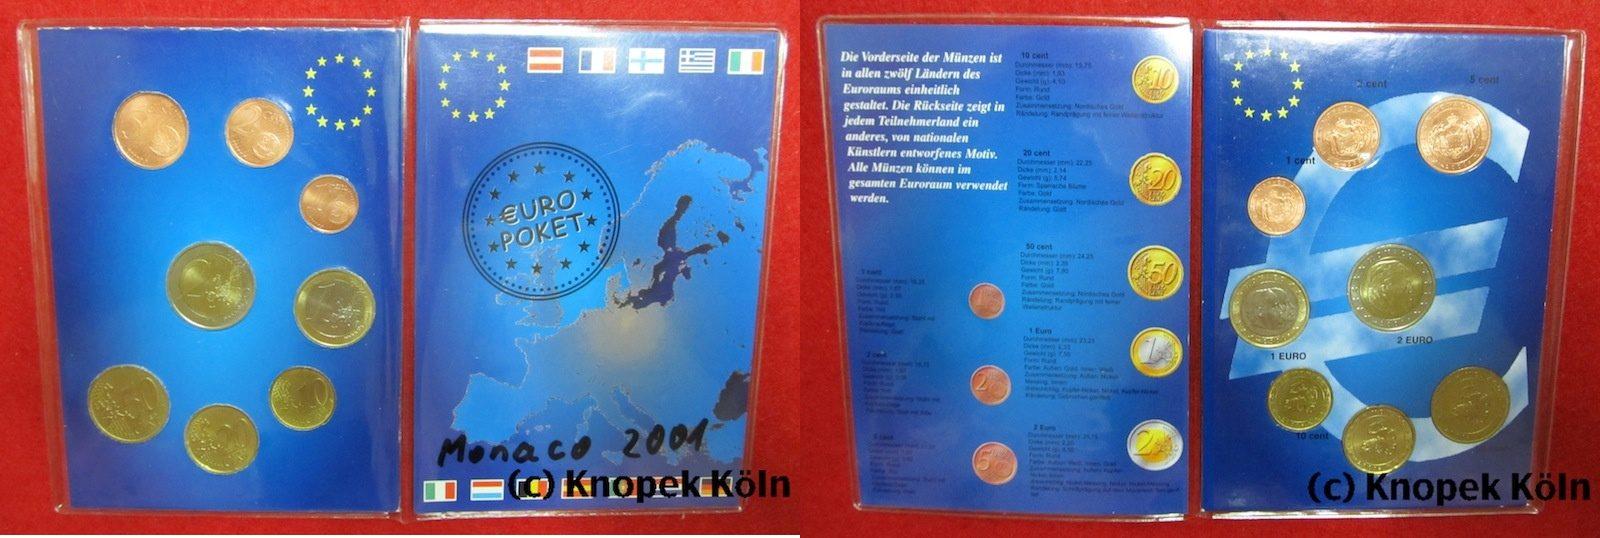 Foto Monaco Euro-Kursmünzensatz Kms 2001